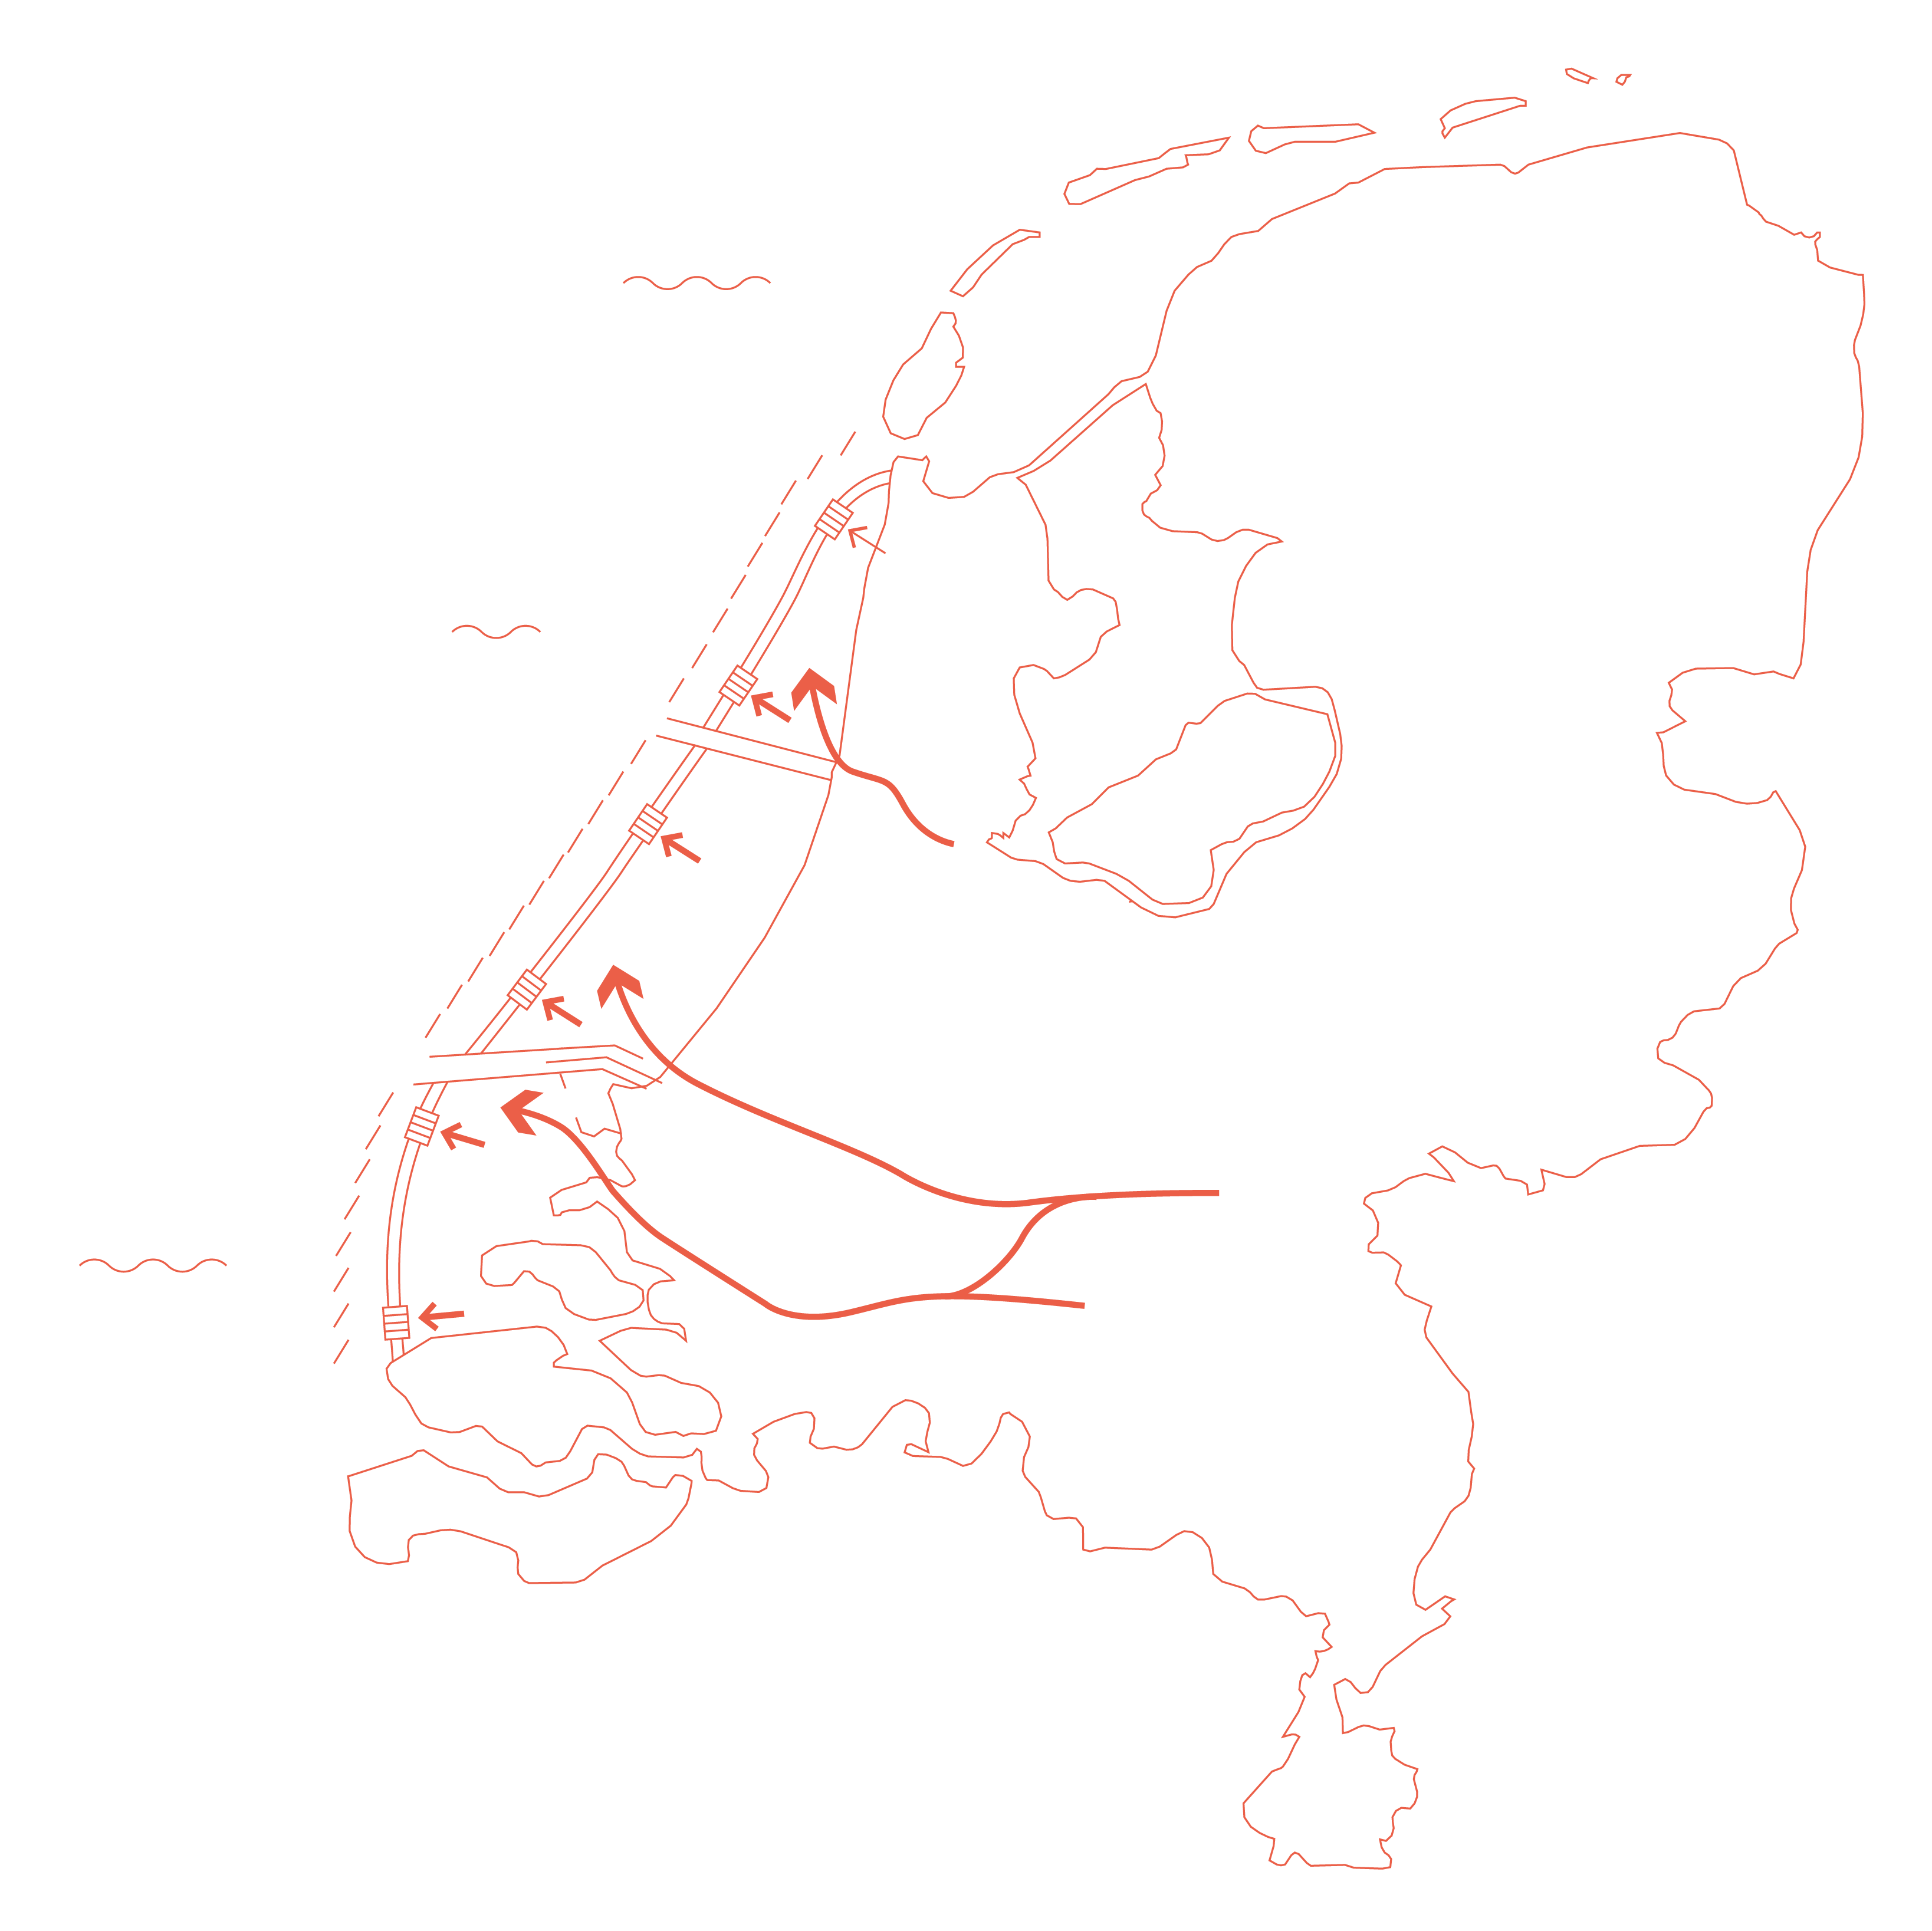 Nederland overspoeld